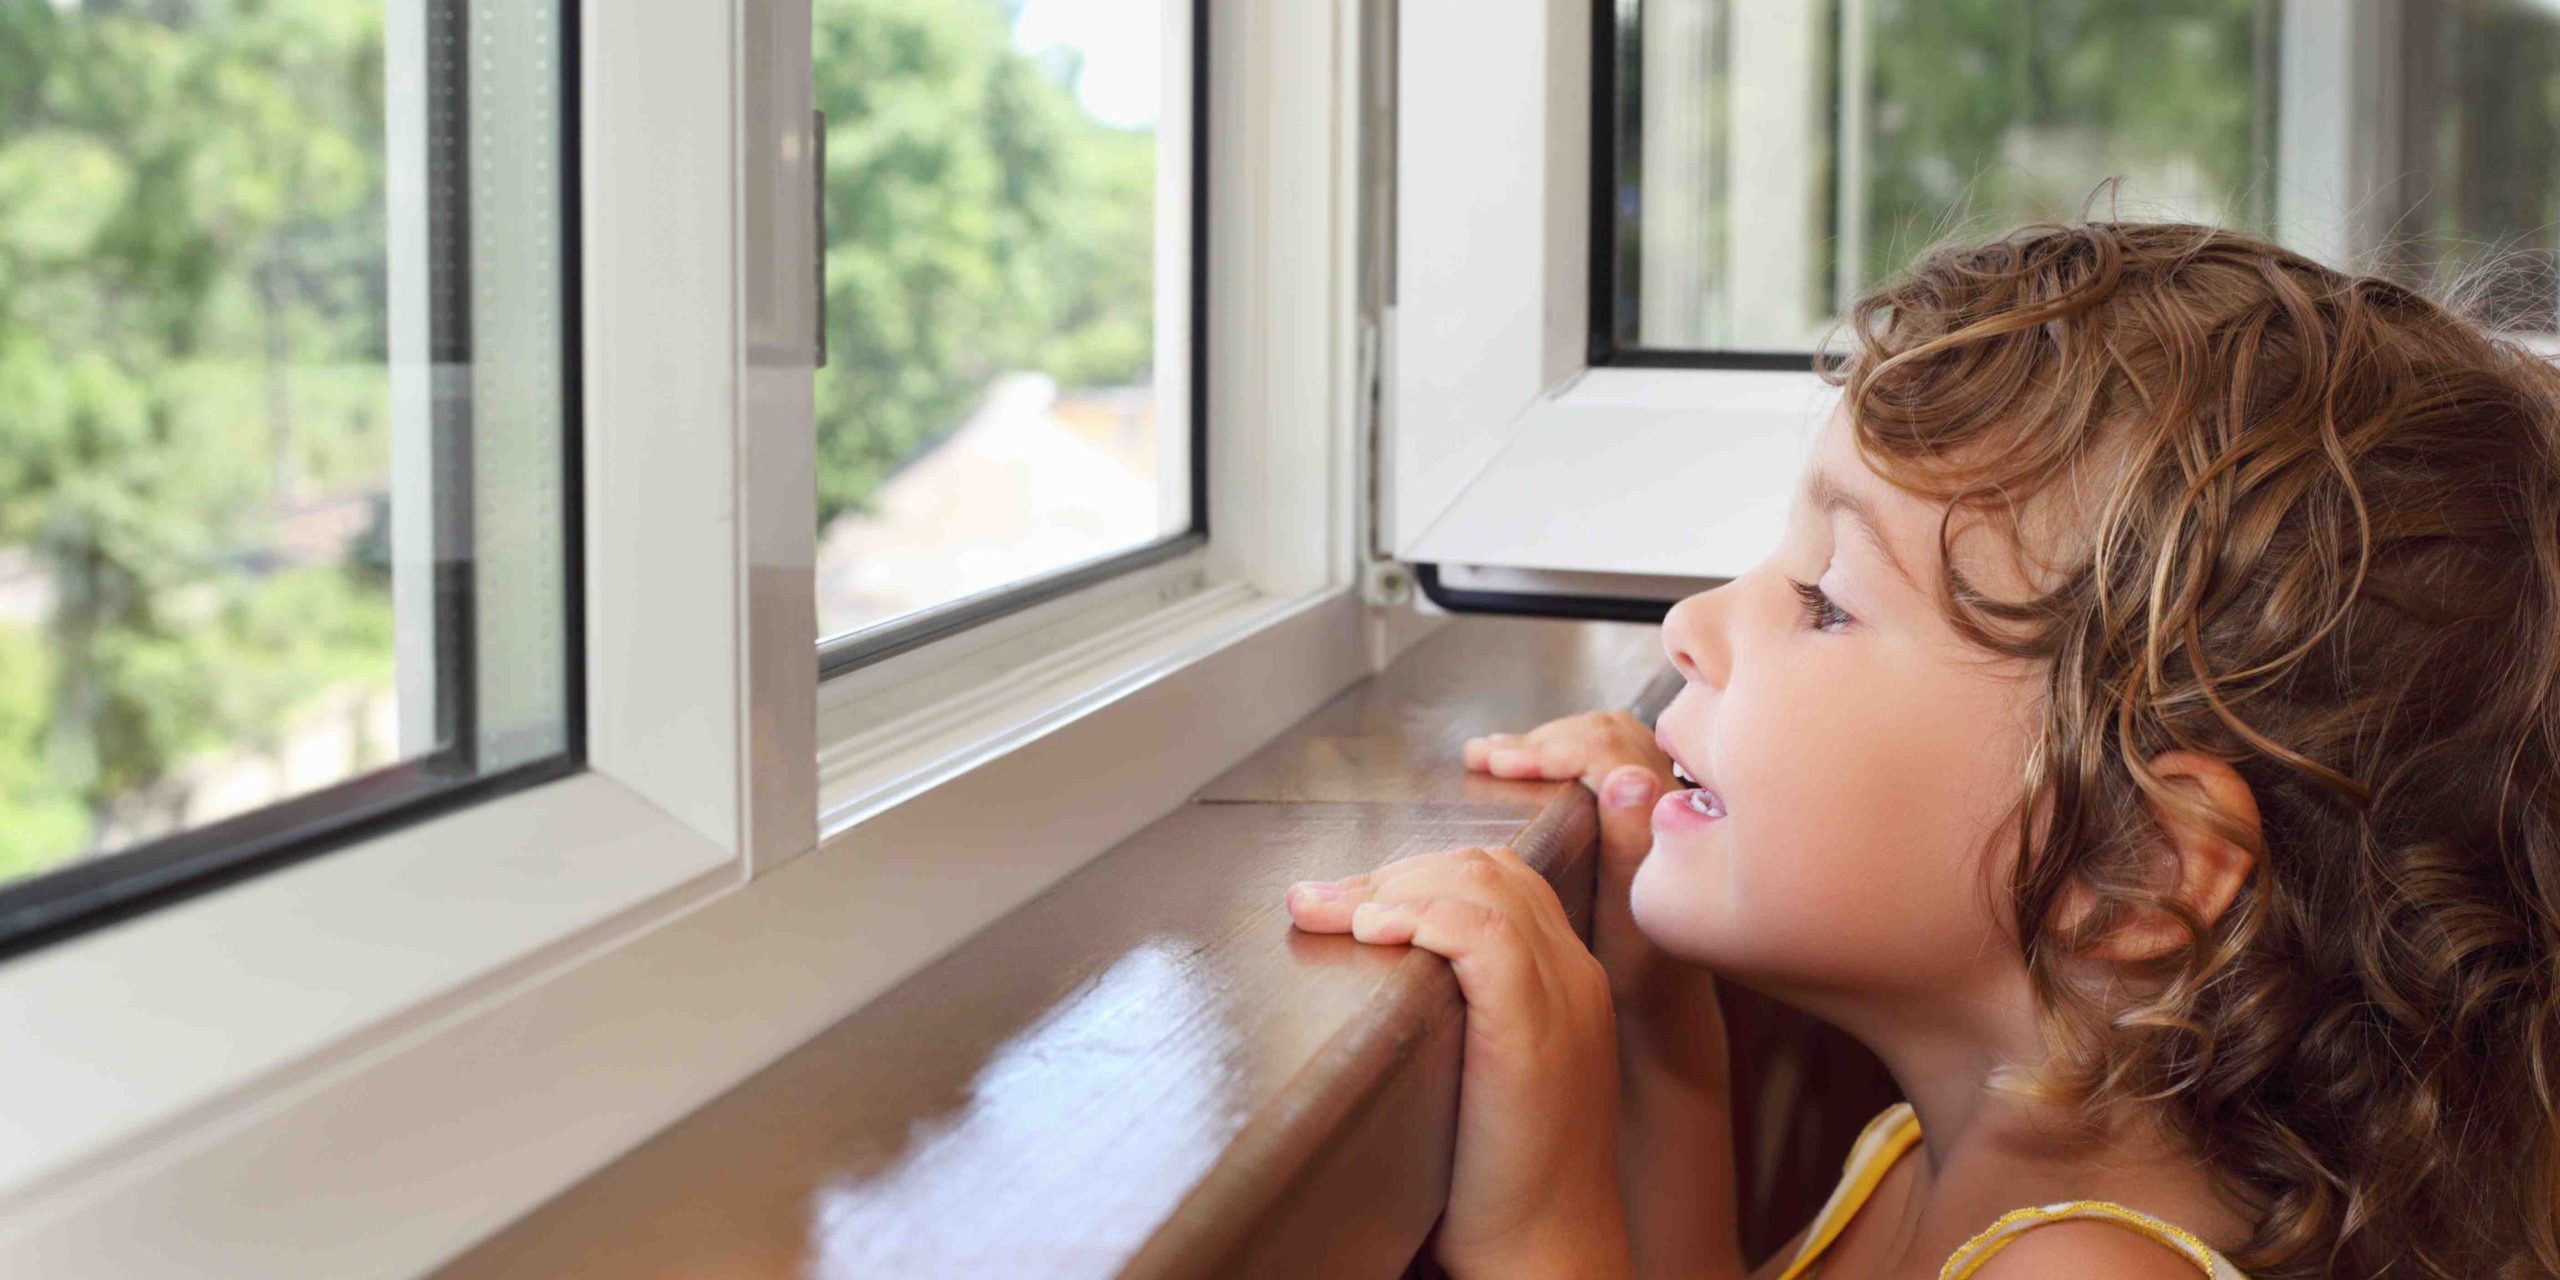 Los Peques y las alturas: ¿Tienes tus ventanas preparadas para los niños? -  Pequesseguros